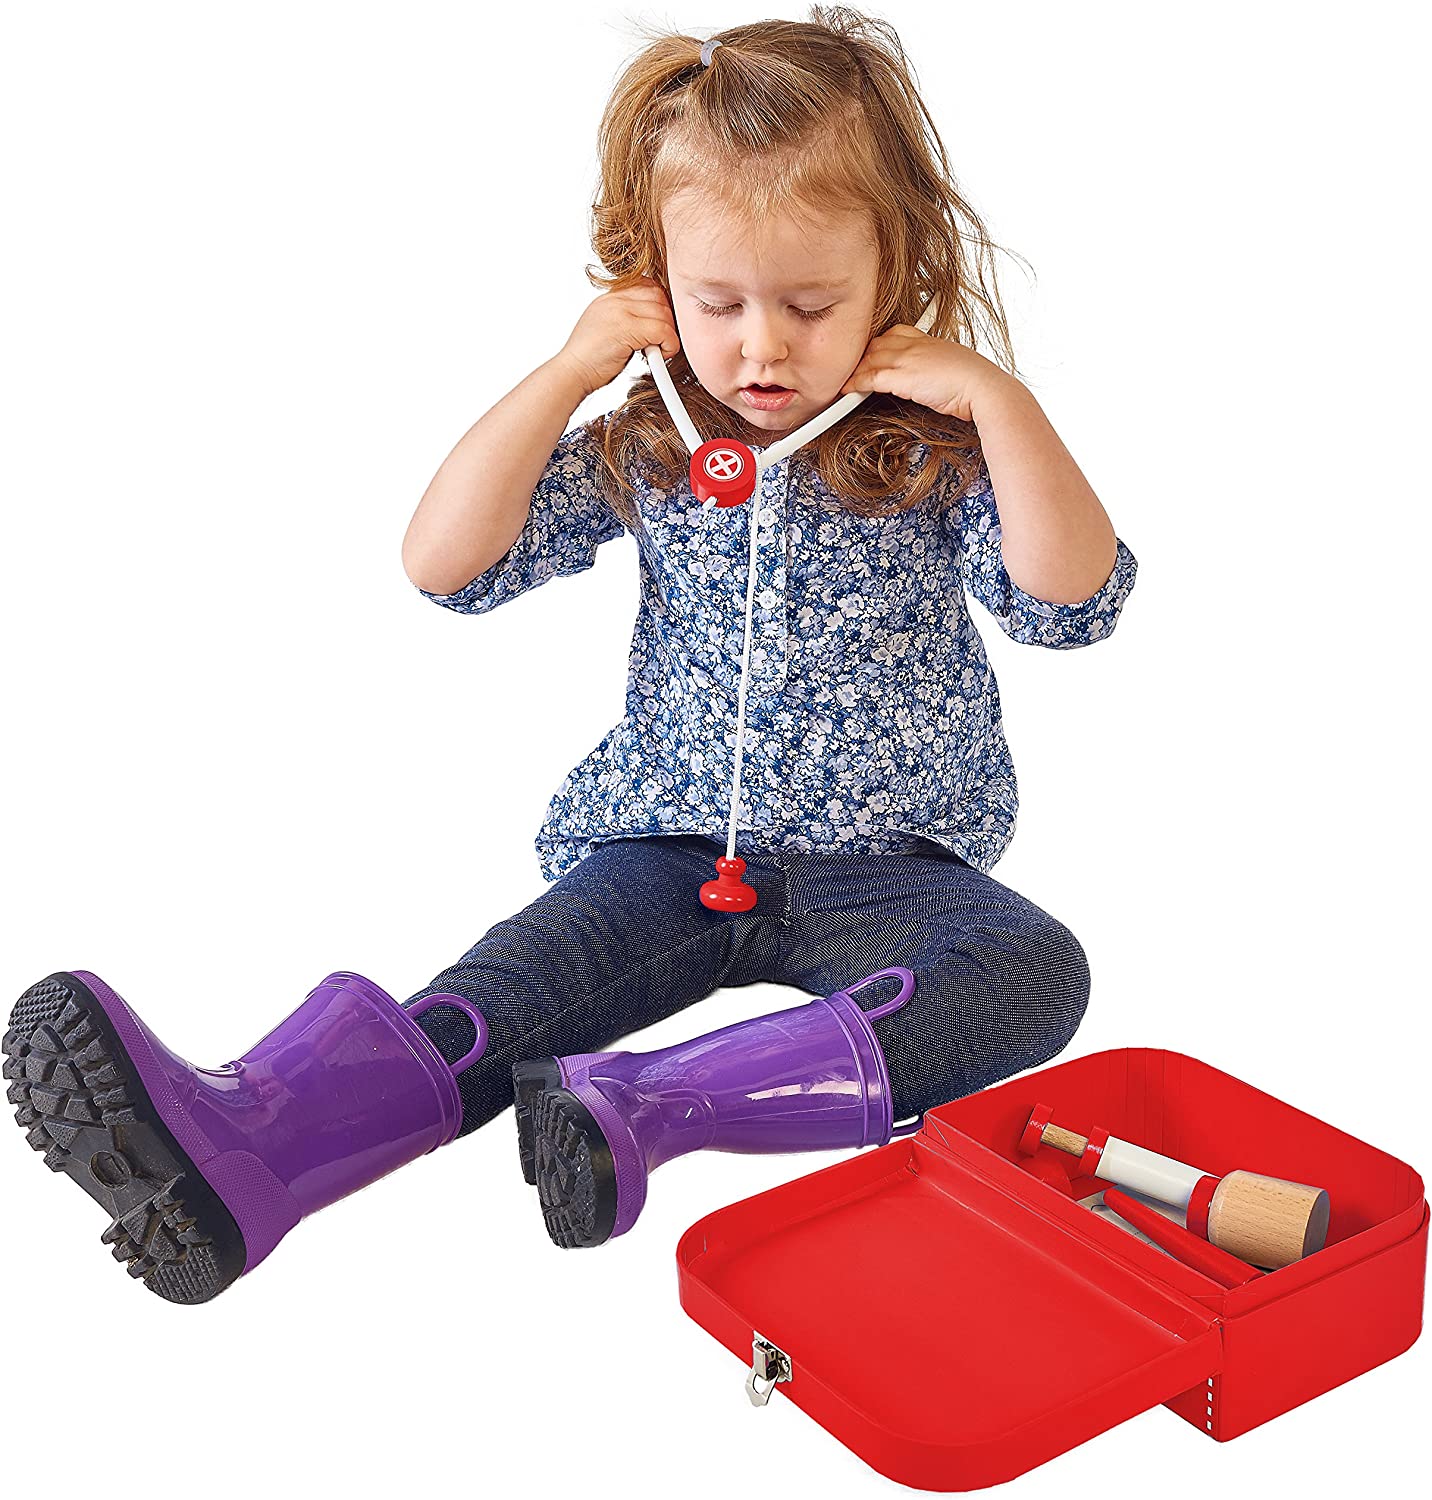 Wooden Doctor Kit for Kids Pretend Doctor Kit for Kids